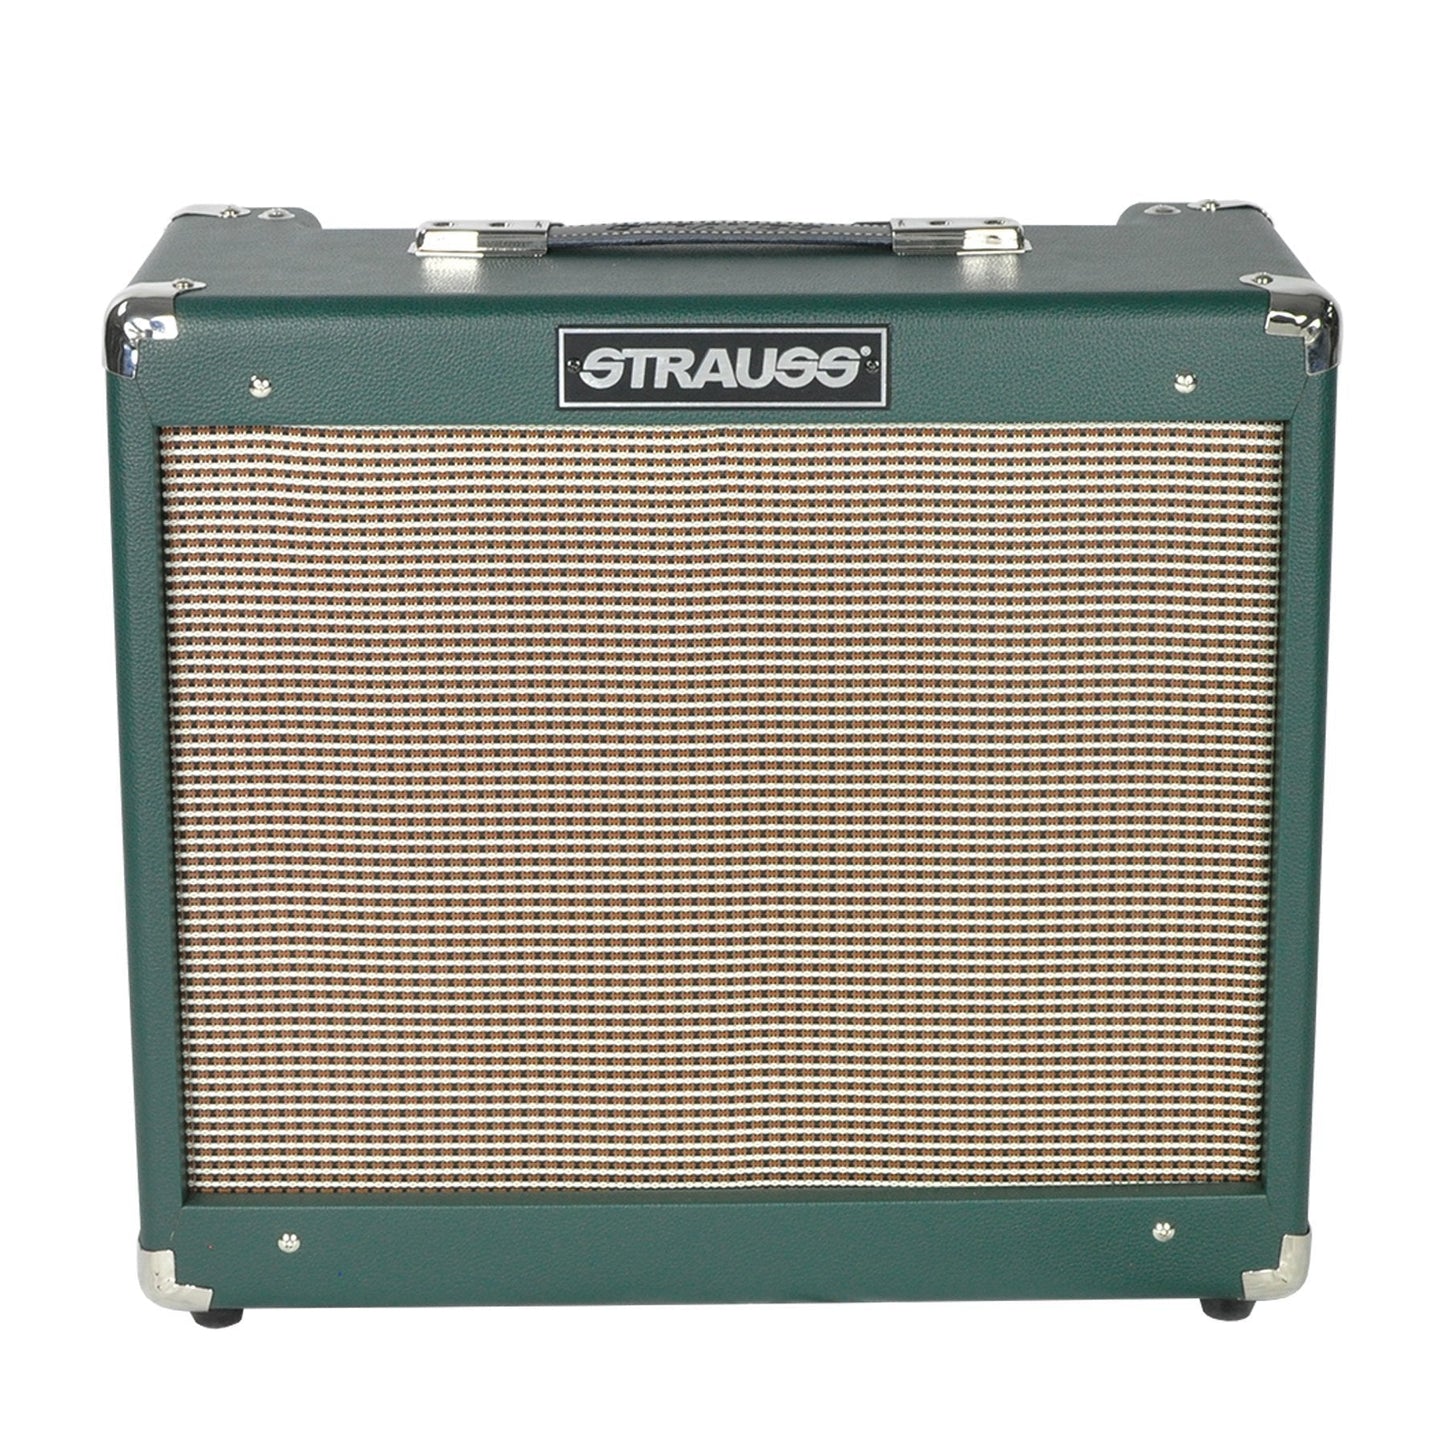 Strauss SVT-20R 20 Watt Combo Valve Amplifier with Reverb (Green)